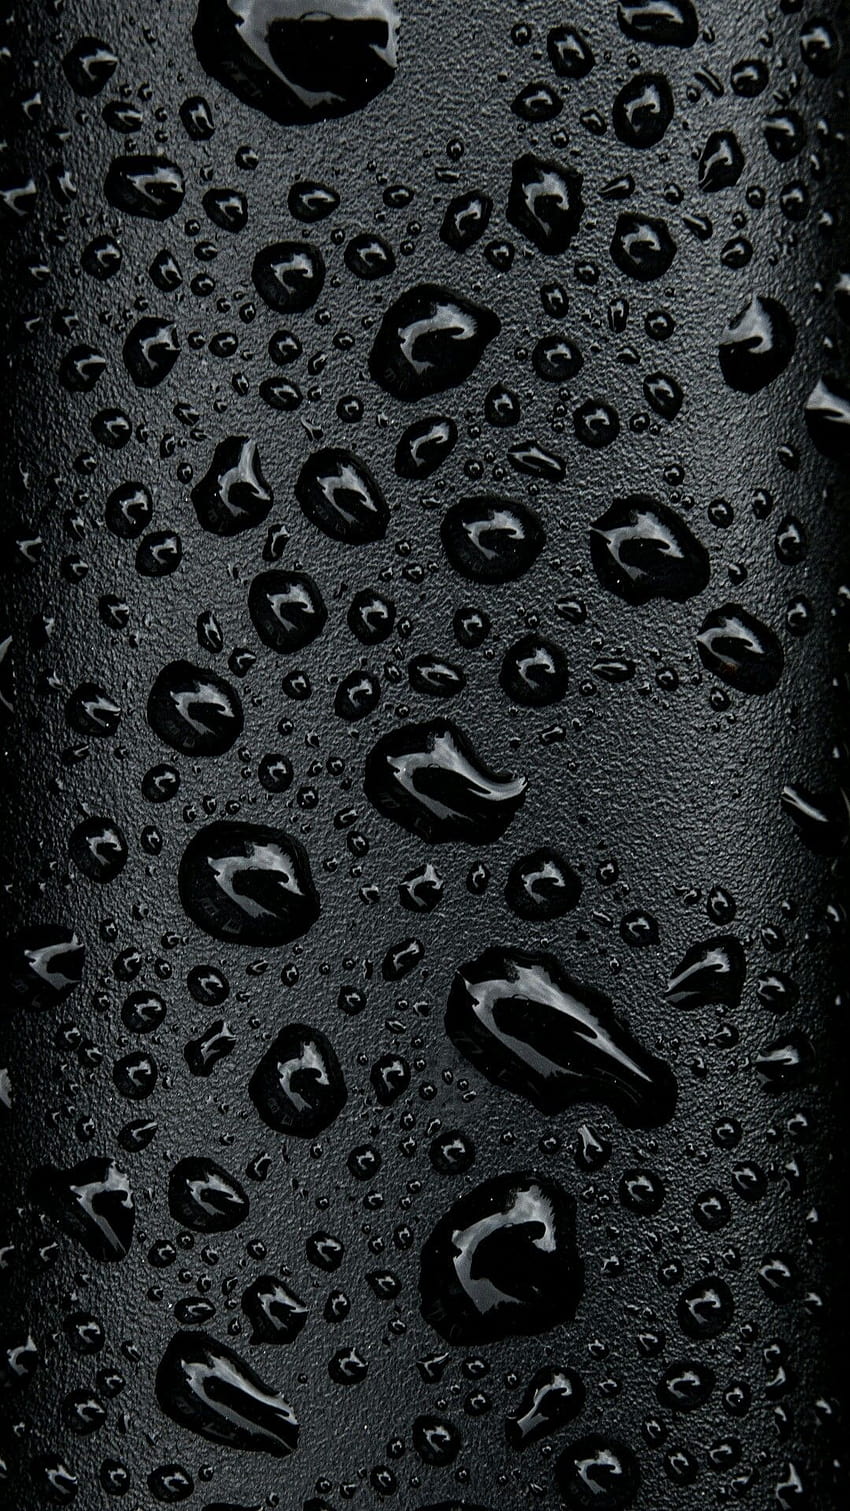 Gotas de agua negra para teléfonos, amoled de gotas de agua fondo de pantalla del teléfono